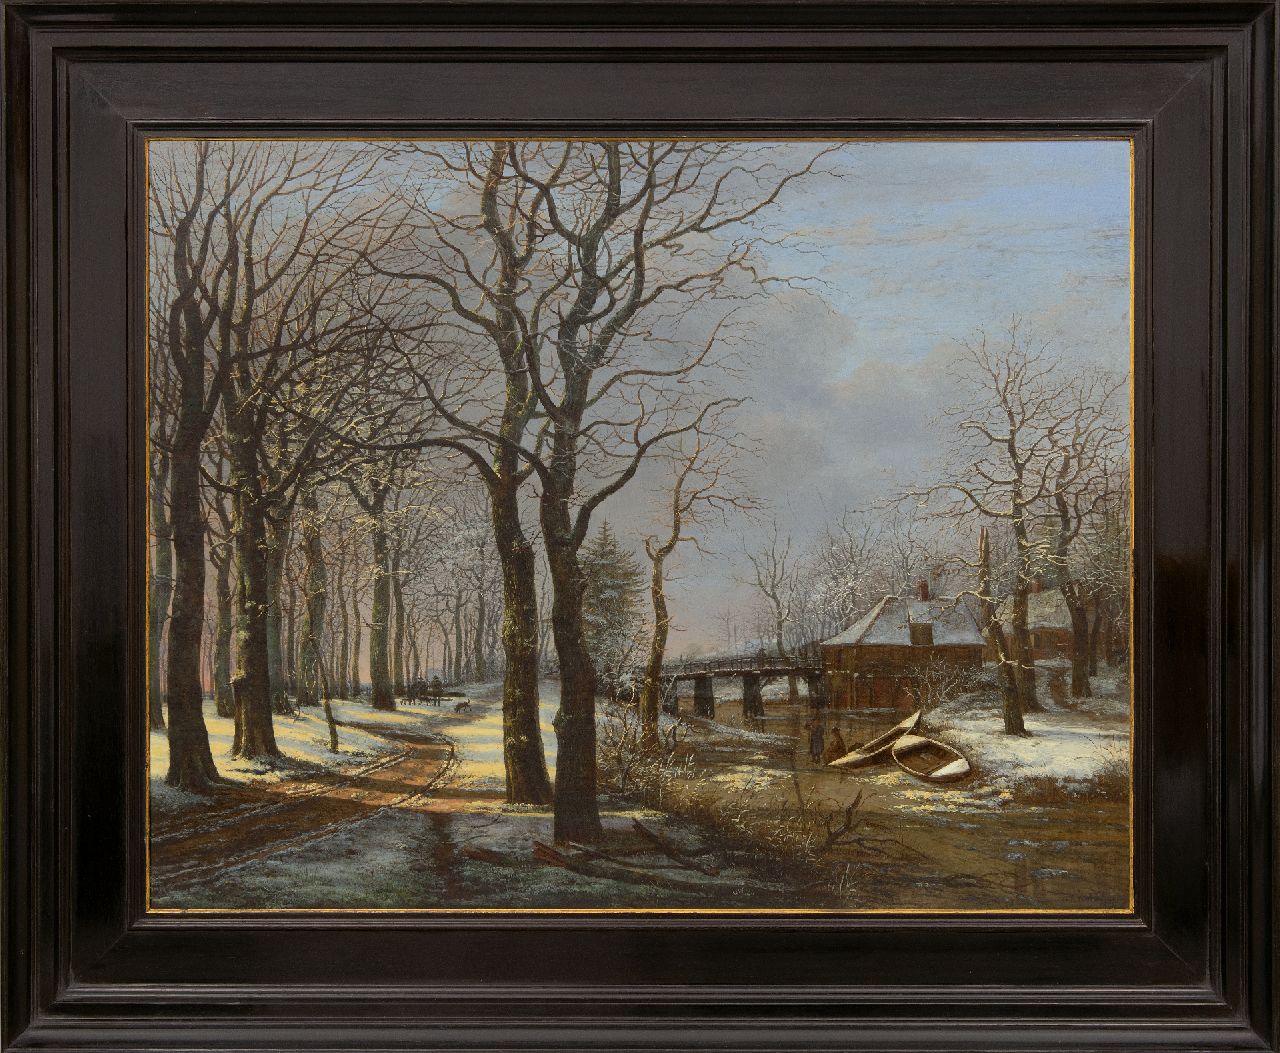 Westenberg G.P.  | George Pieter Westenberg | Schilderijen te koop aangeboden | Besneeuwd landschap met bomenlaan, olieverf op doek 63,8 x 80,8 cm, gesigneerd rechtsonder en gedateerd 1821